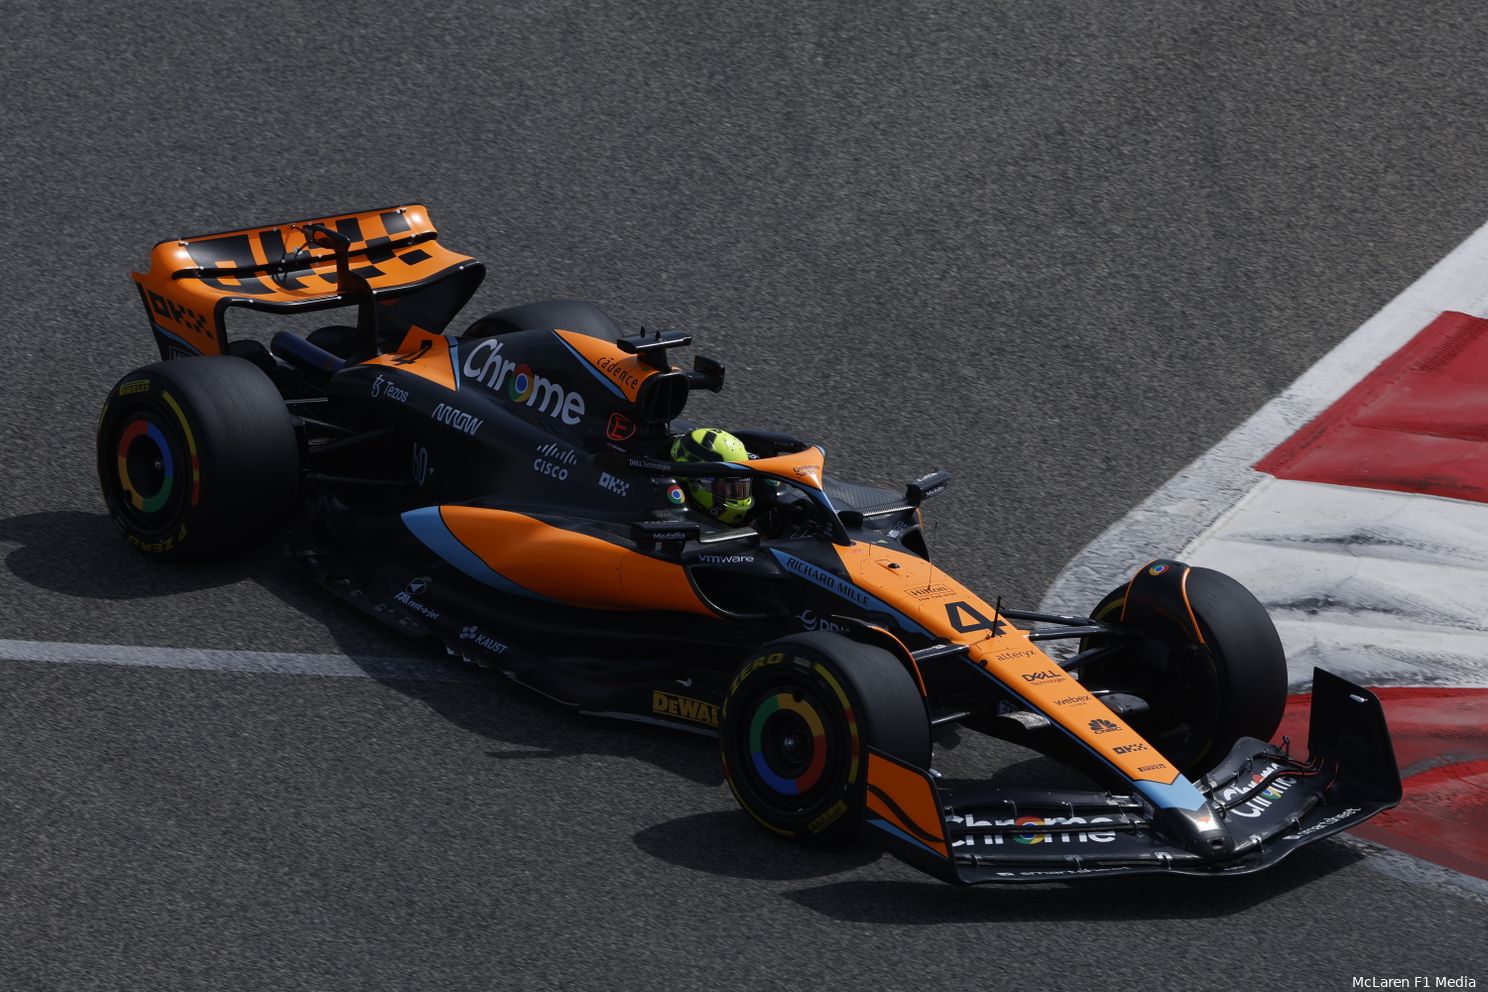 The 2023 McLaren. (Photo: McLaren F1 Media)